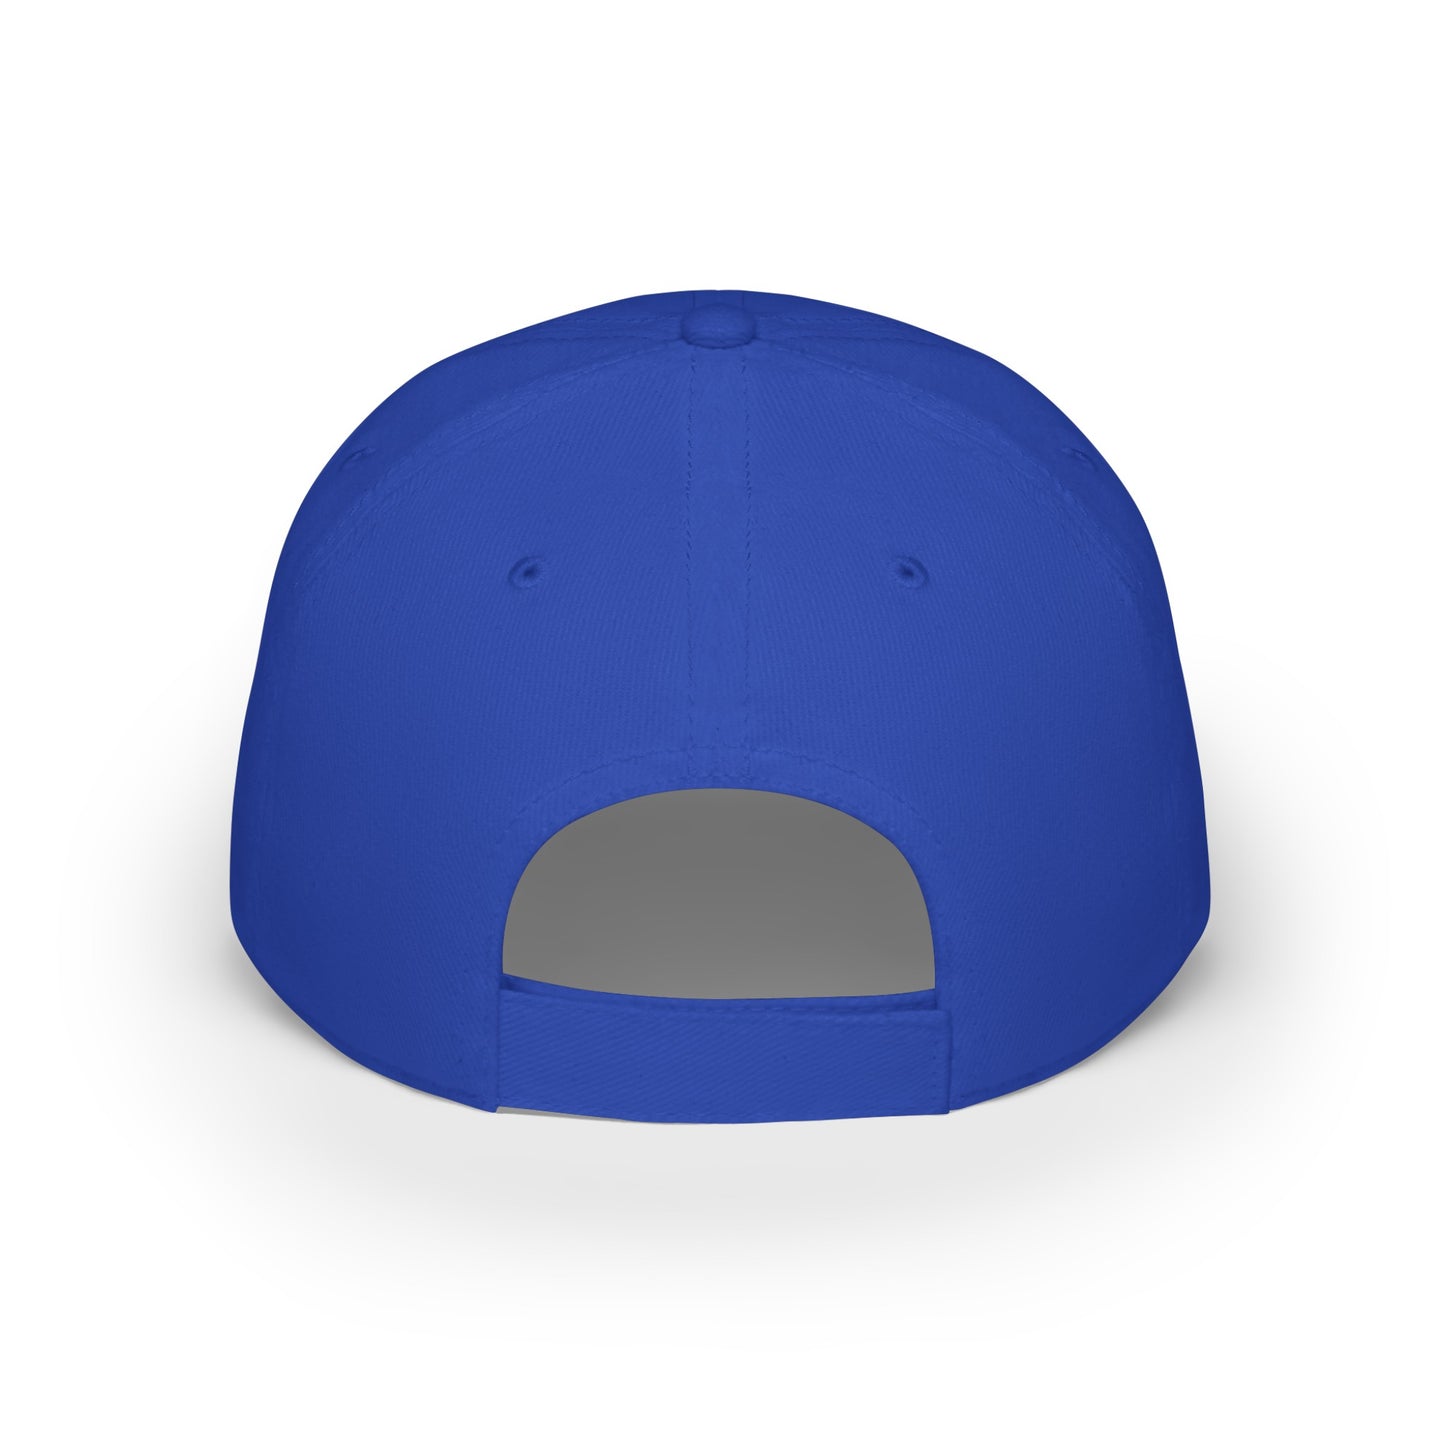 MDBTDJ#AJWBBLUC - Low Profile Baseball Cap Tattooed Dj's Limited Edition, Hats, Tattooed Djs Shop